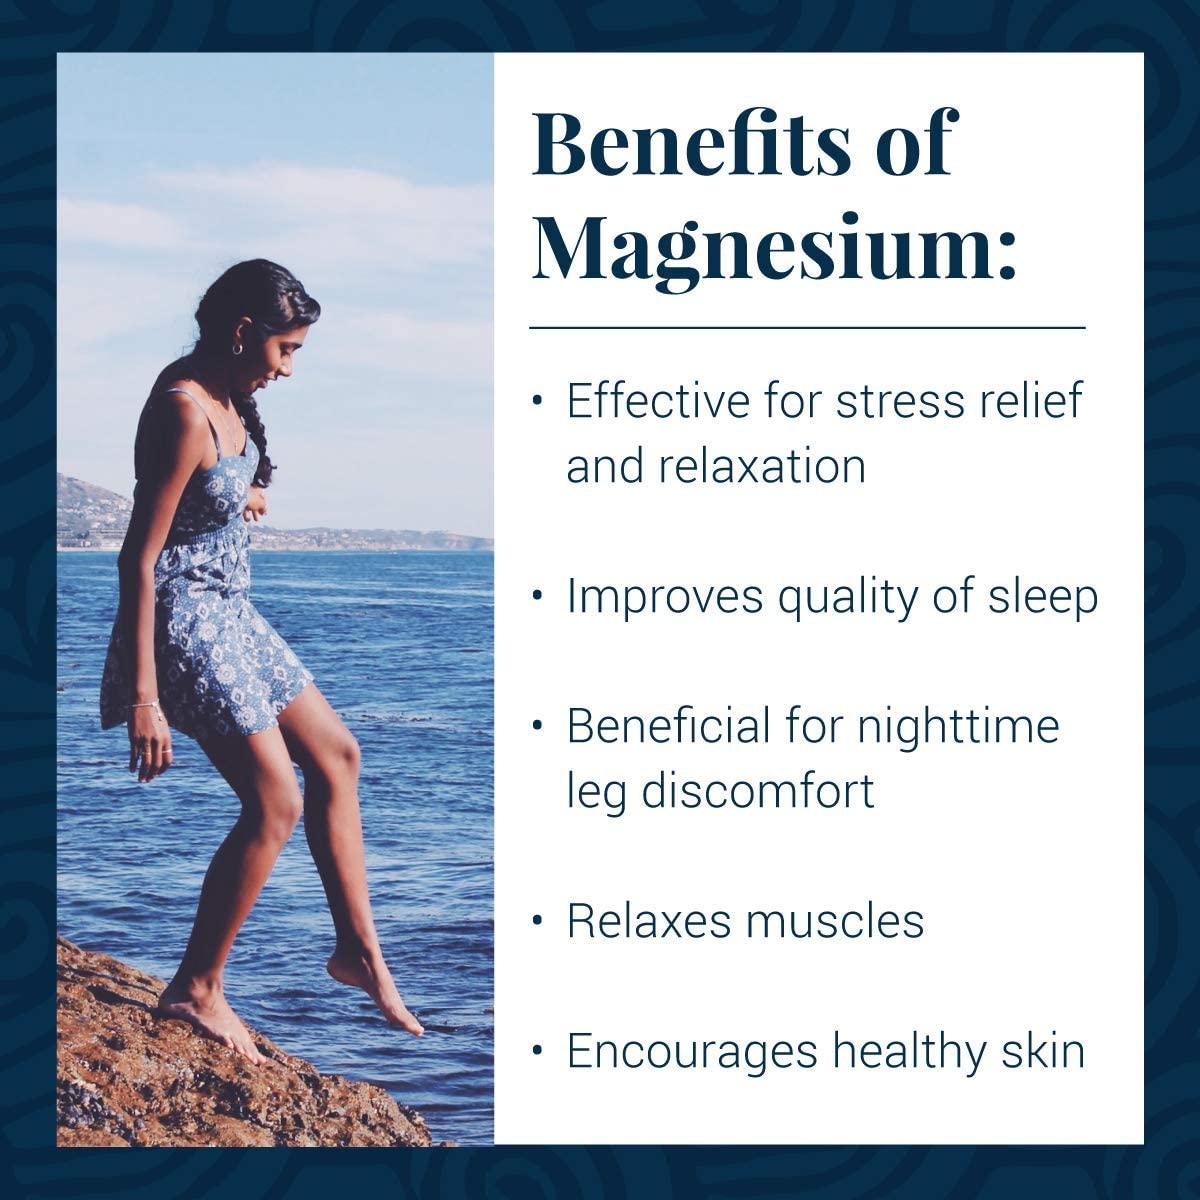 Magnesium Oil Ultra